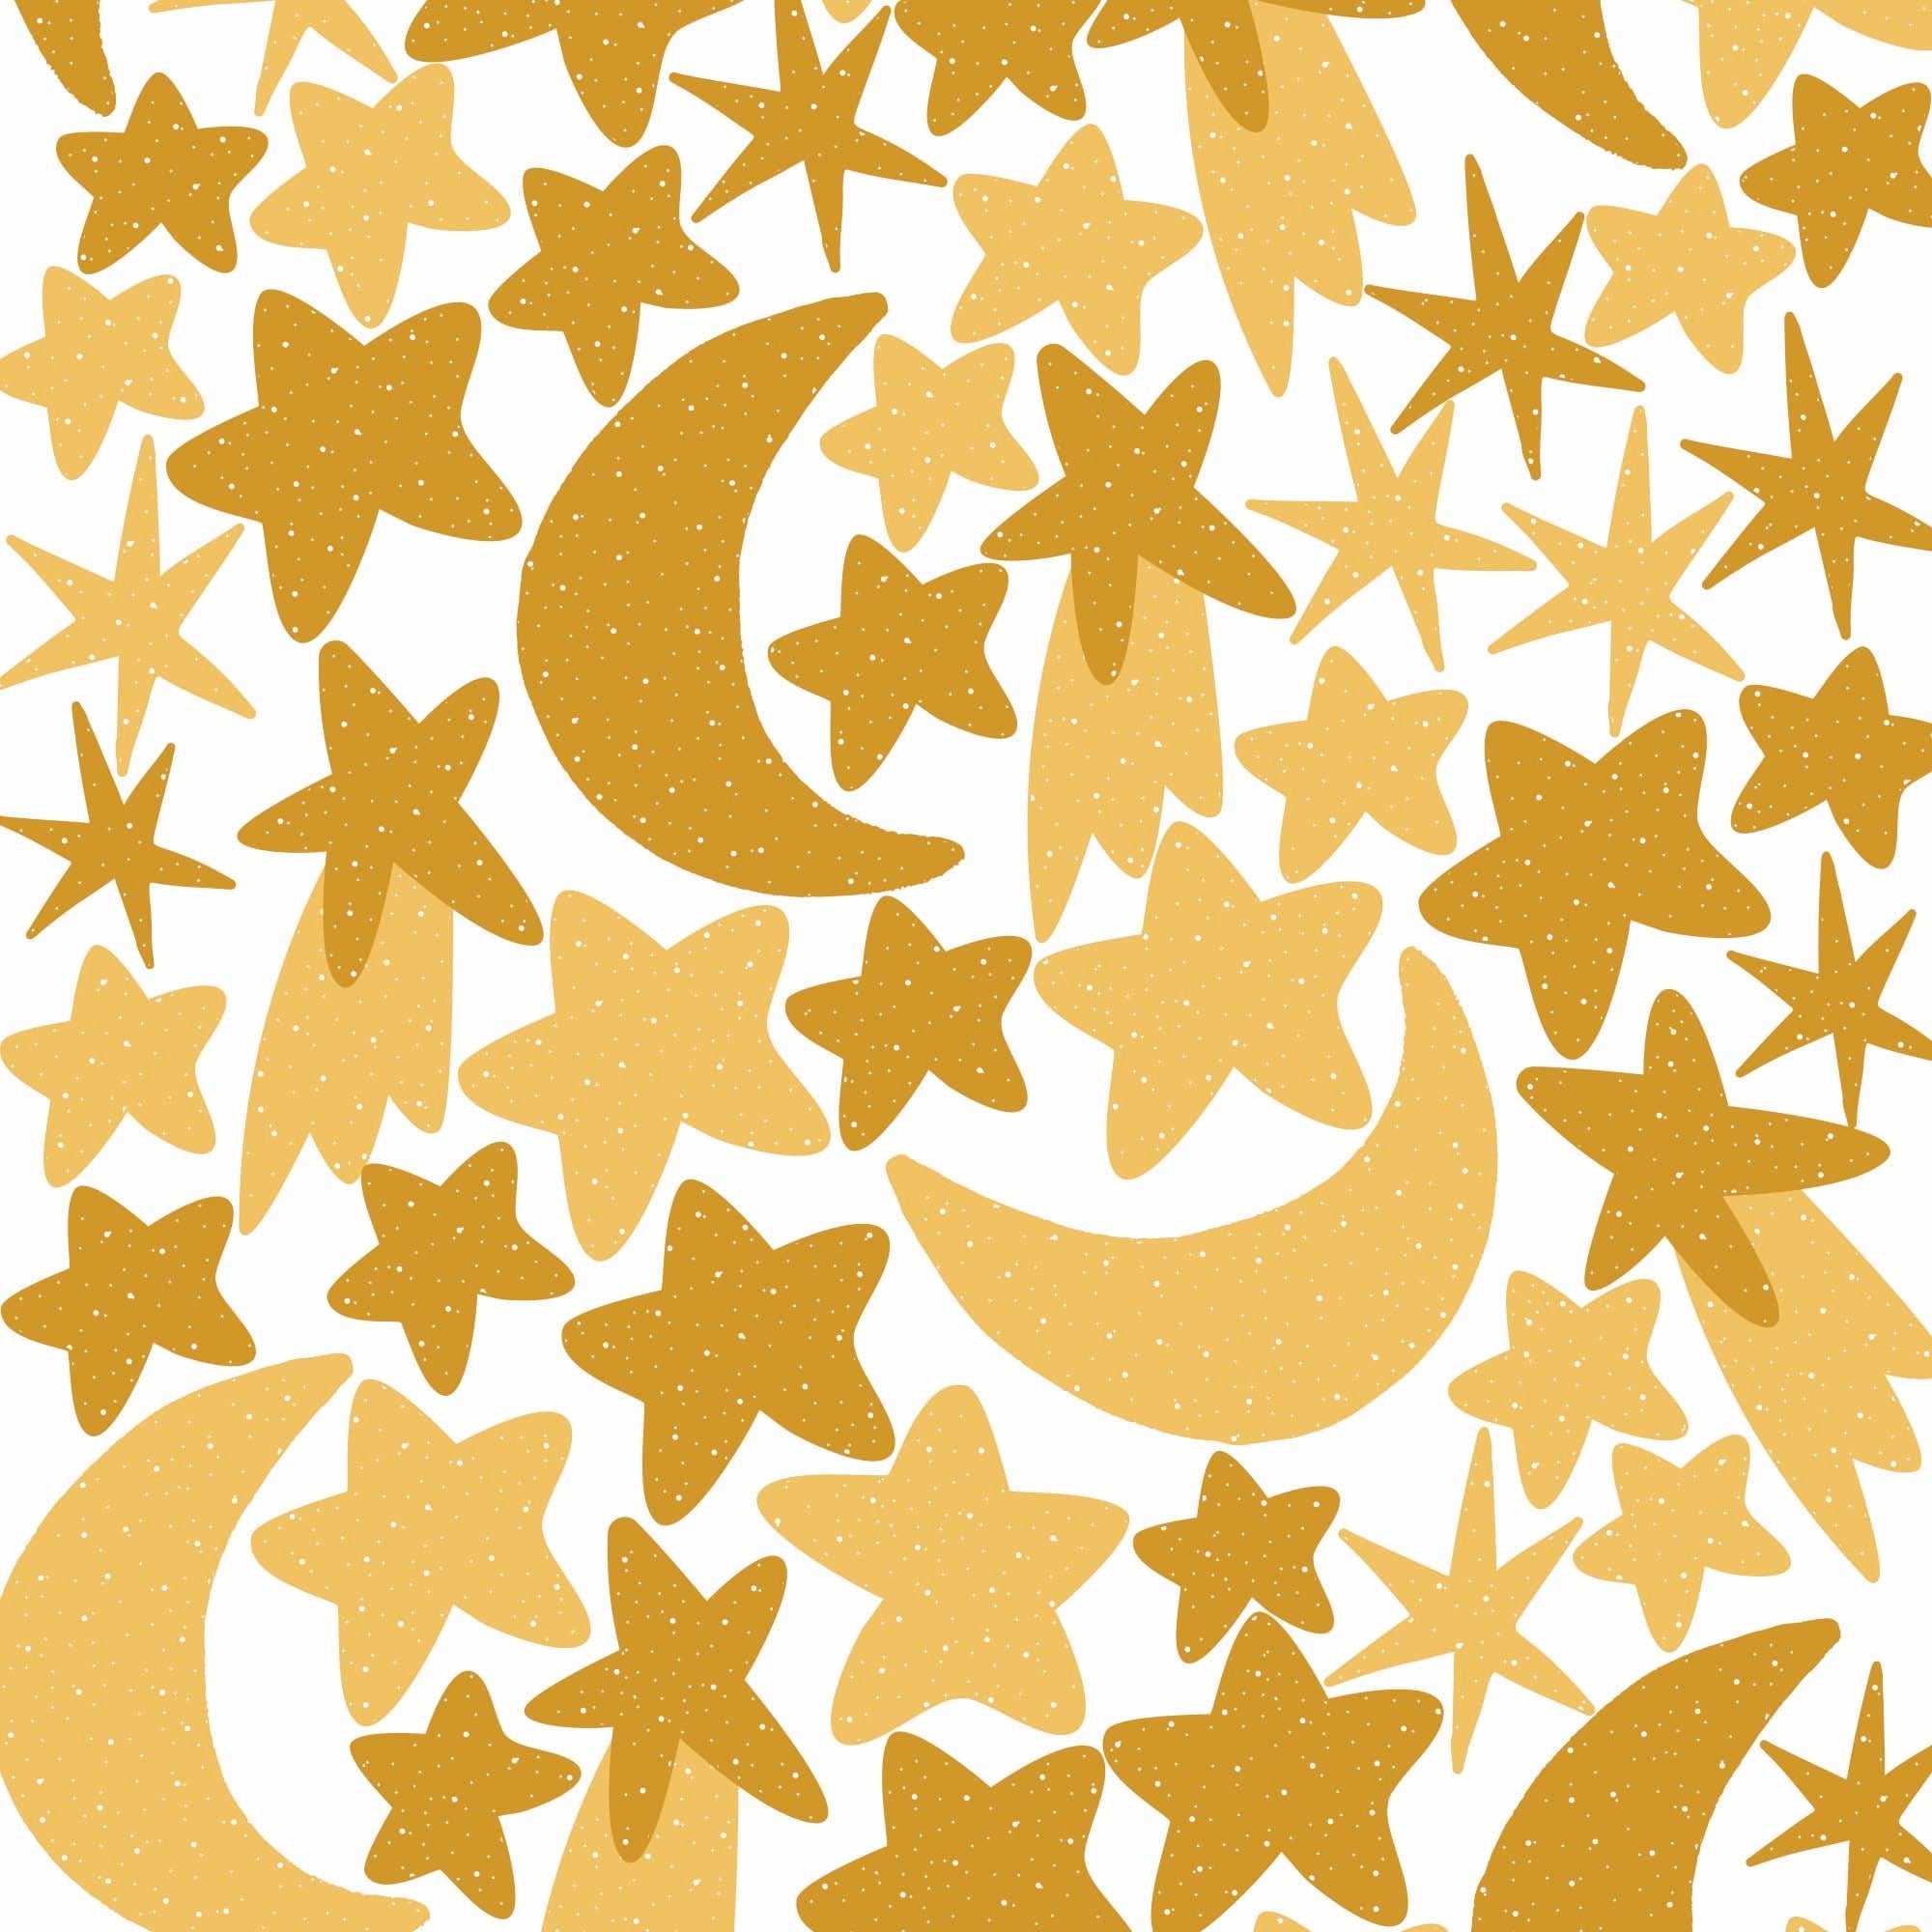 Comprar vinilo decorativo para dormitorios infantiles estrellas y lunas arena #color_estrellas-y-lunas-arena